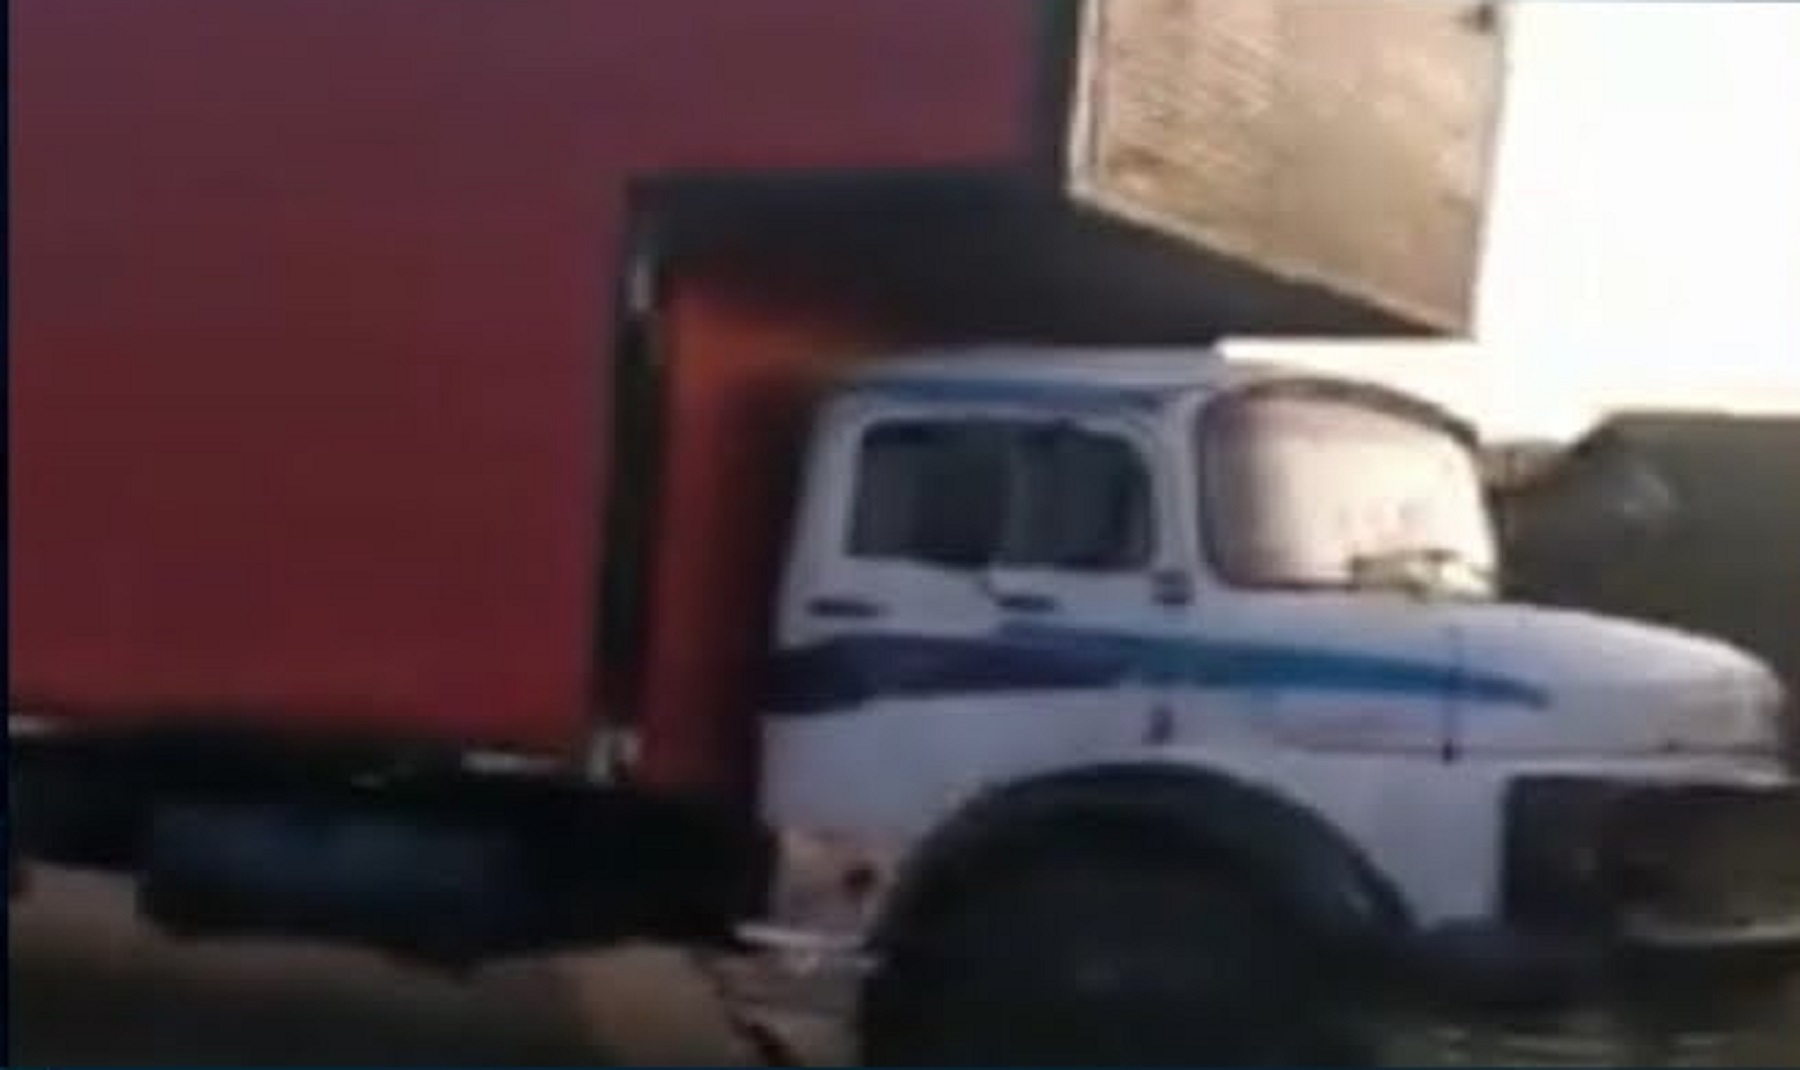 Desgovernado caminhão atinge duas casa e bate em diversos carros